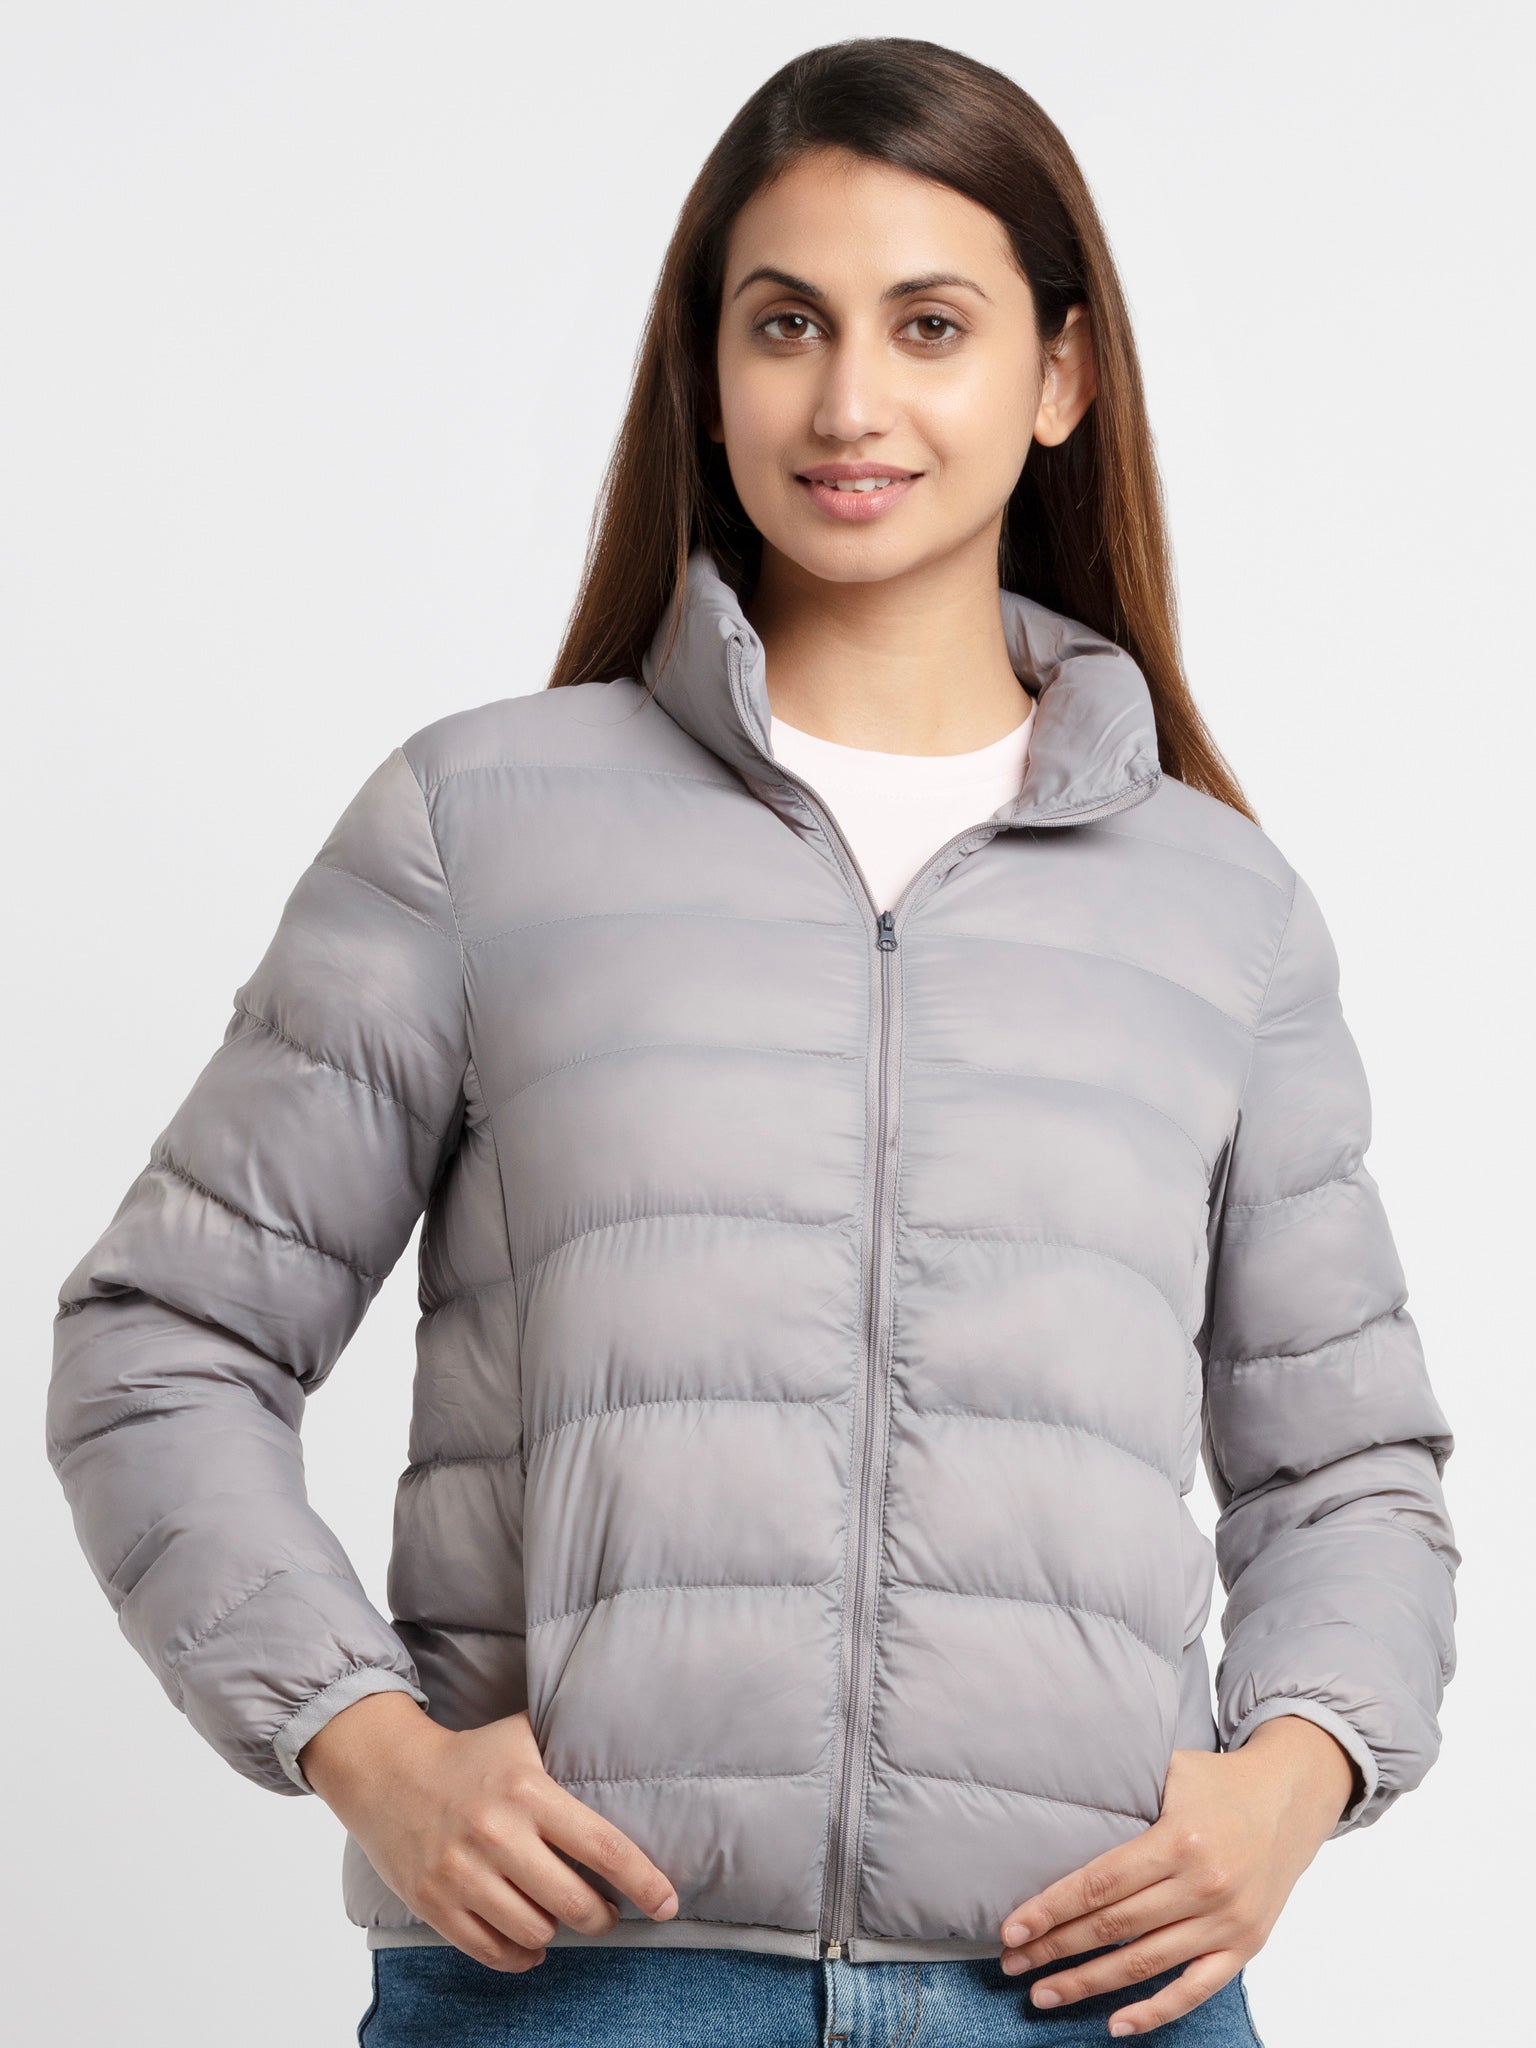 lightweight jacket for women